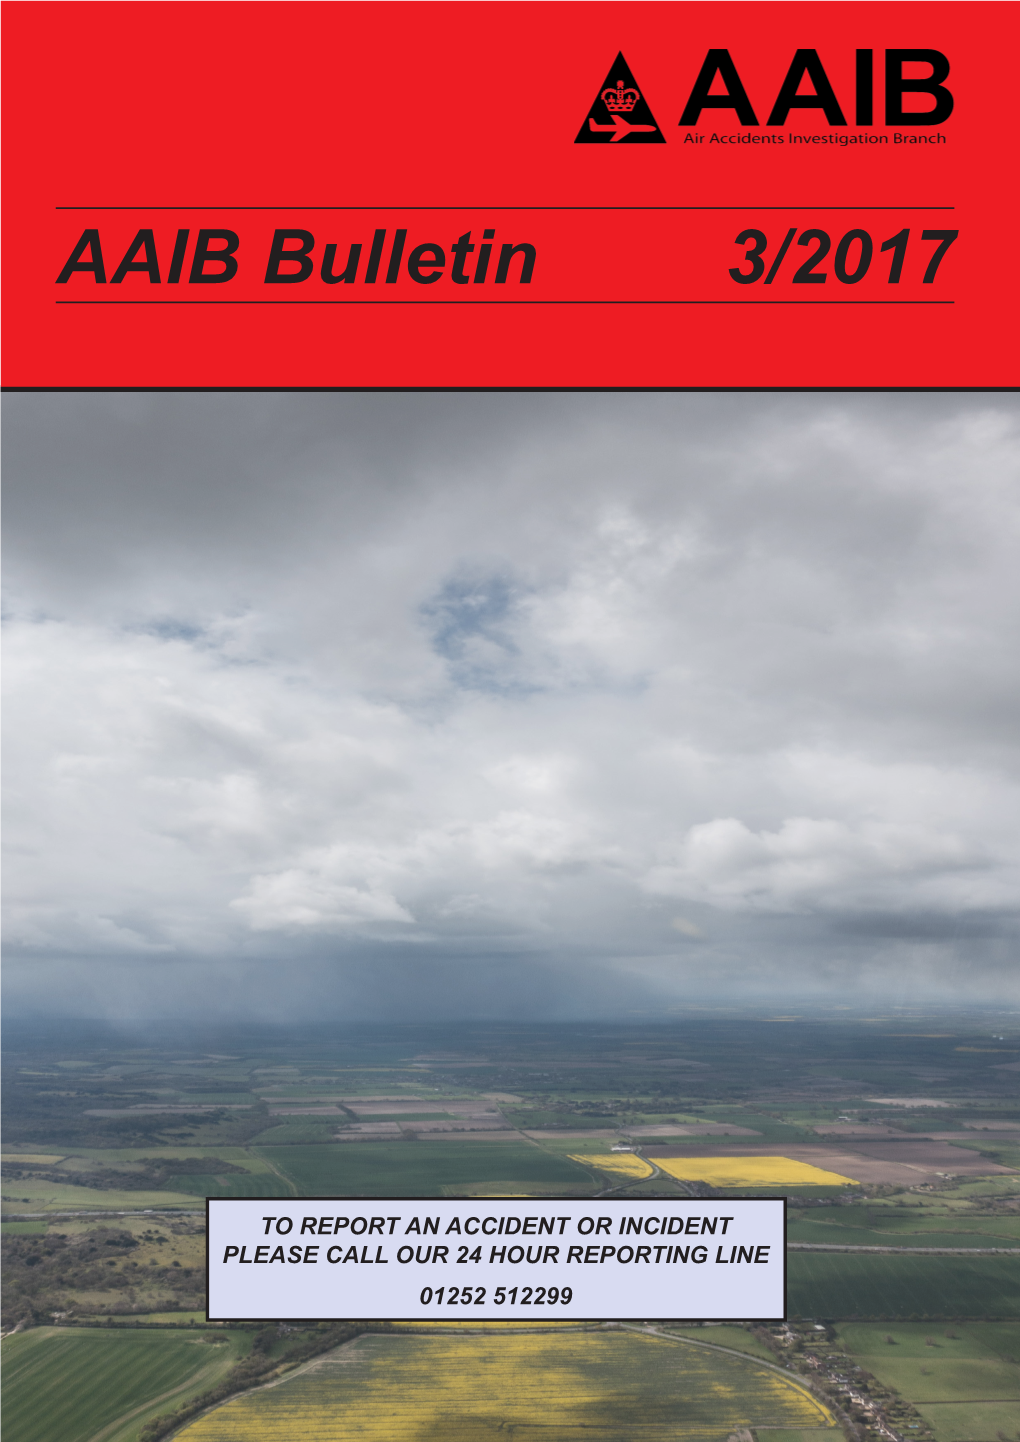 AAIB Bulletin 3/2017